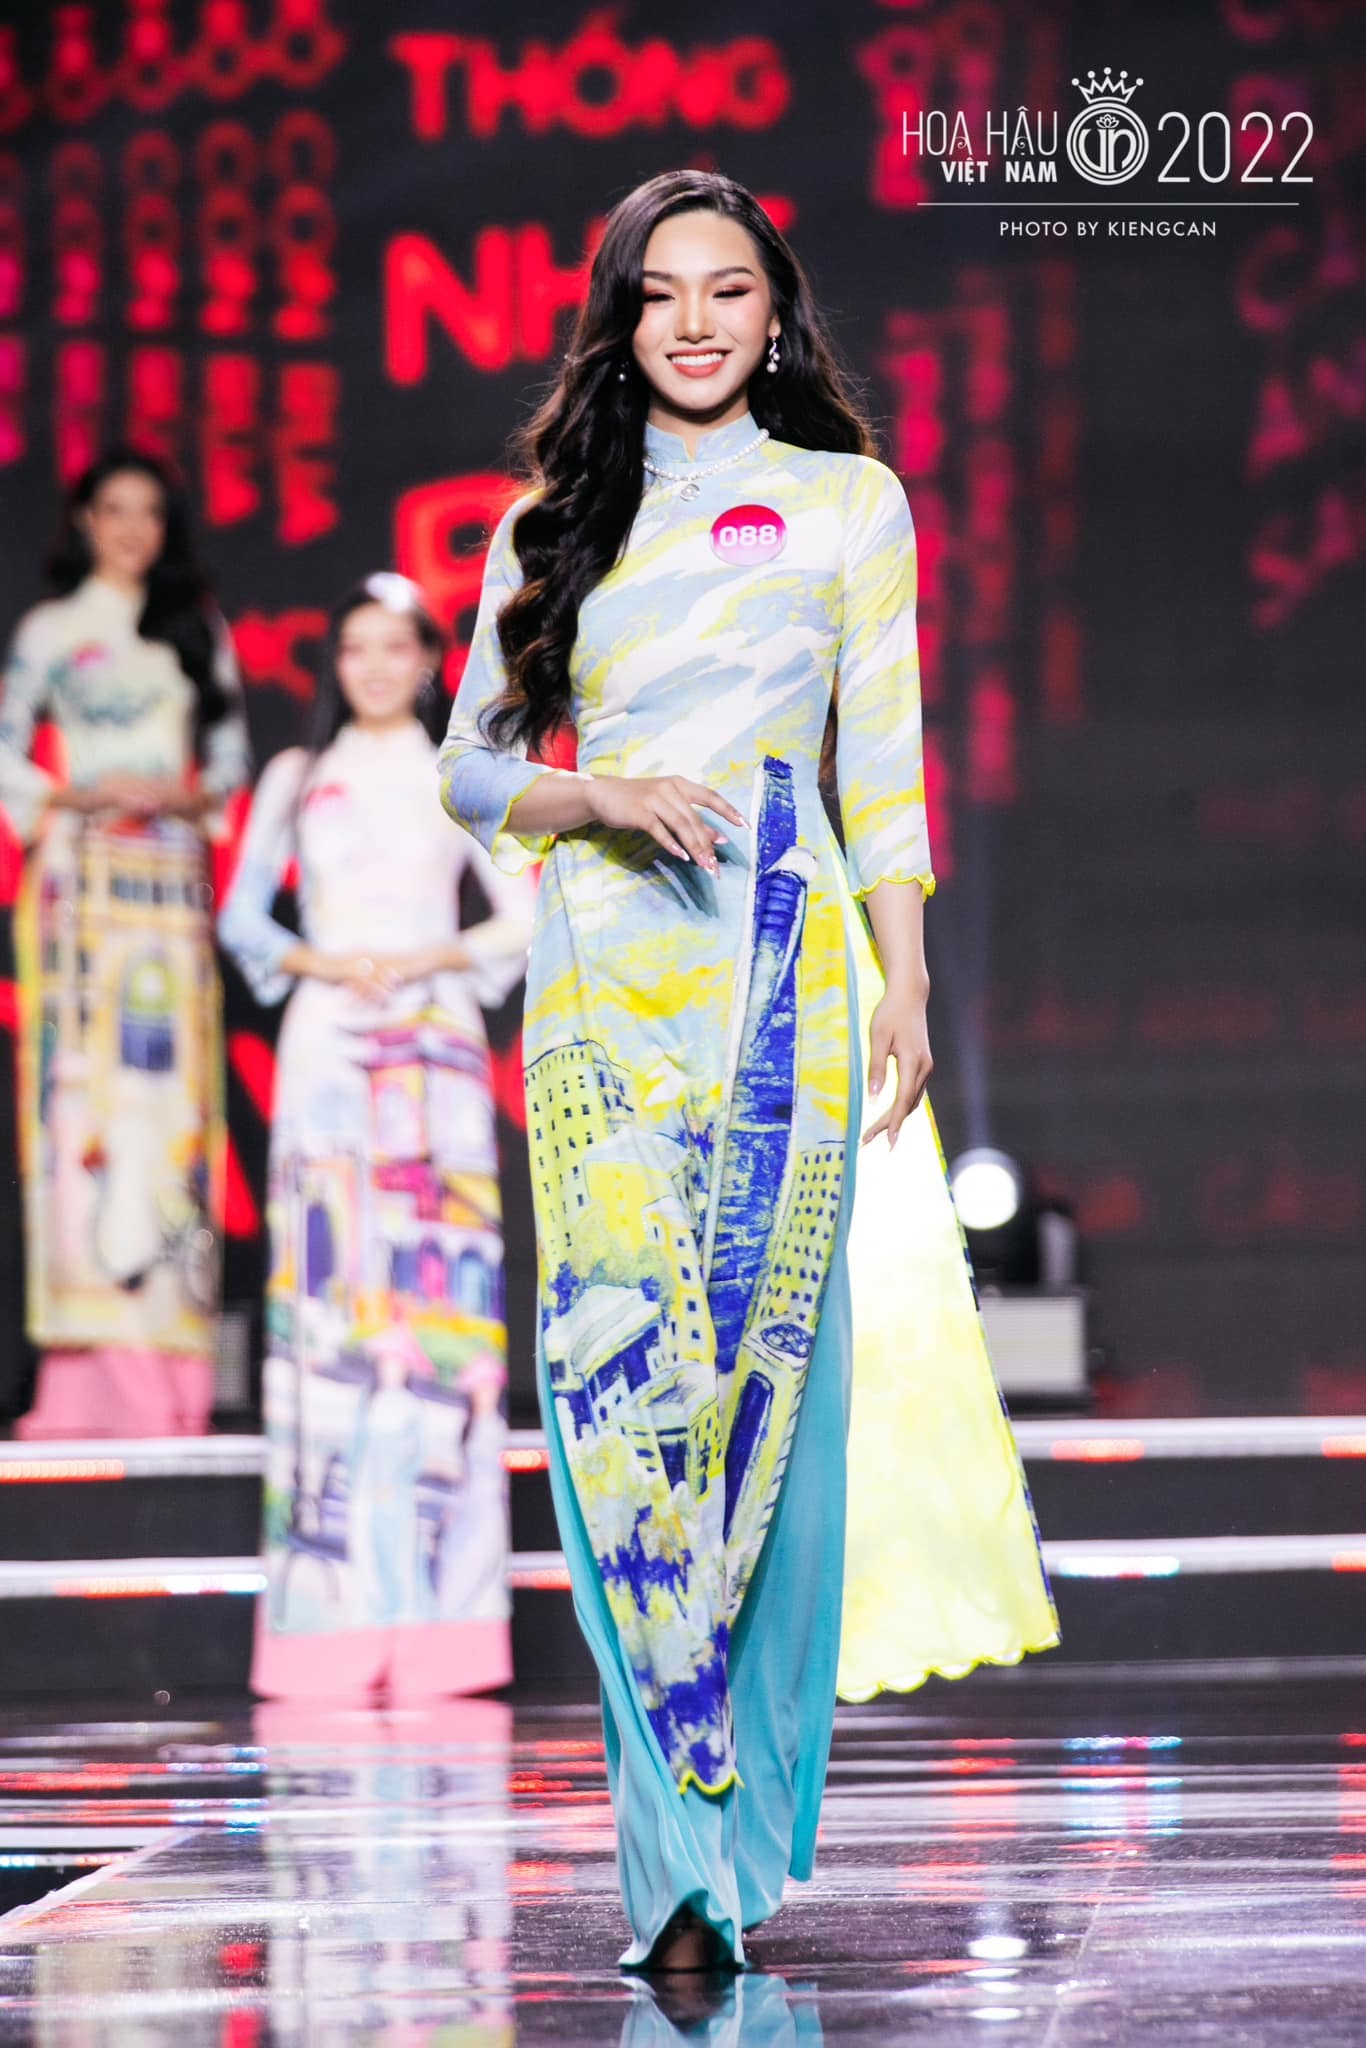 Tham gia cuộc thi “Hoa hậu Việt Nam 2022“, Đinh Khánh Hoà nỗ lực giảm 10kg để có vóc dáng thon gọn. Ảnh: Nhân vật cung cấp